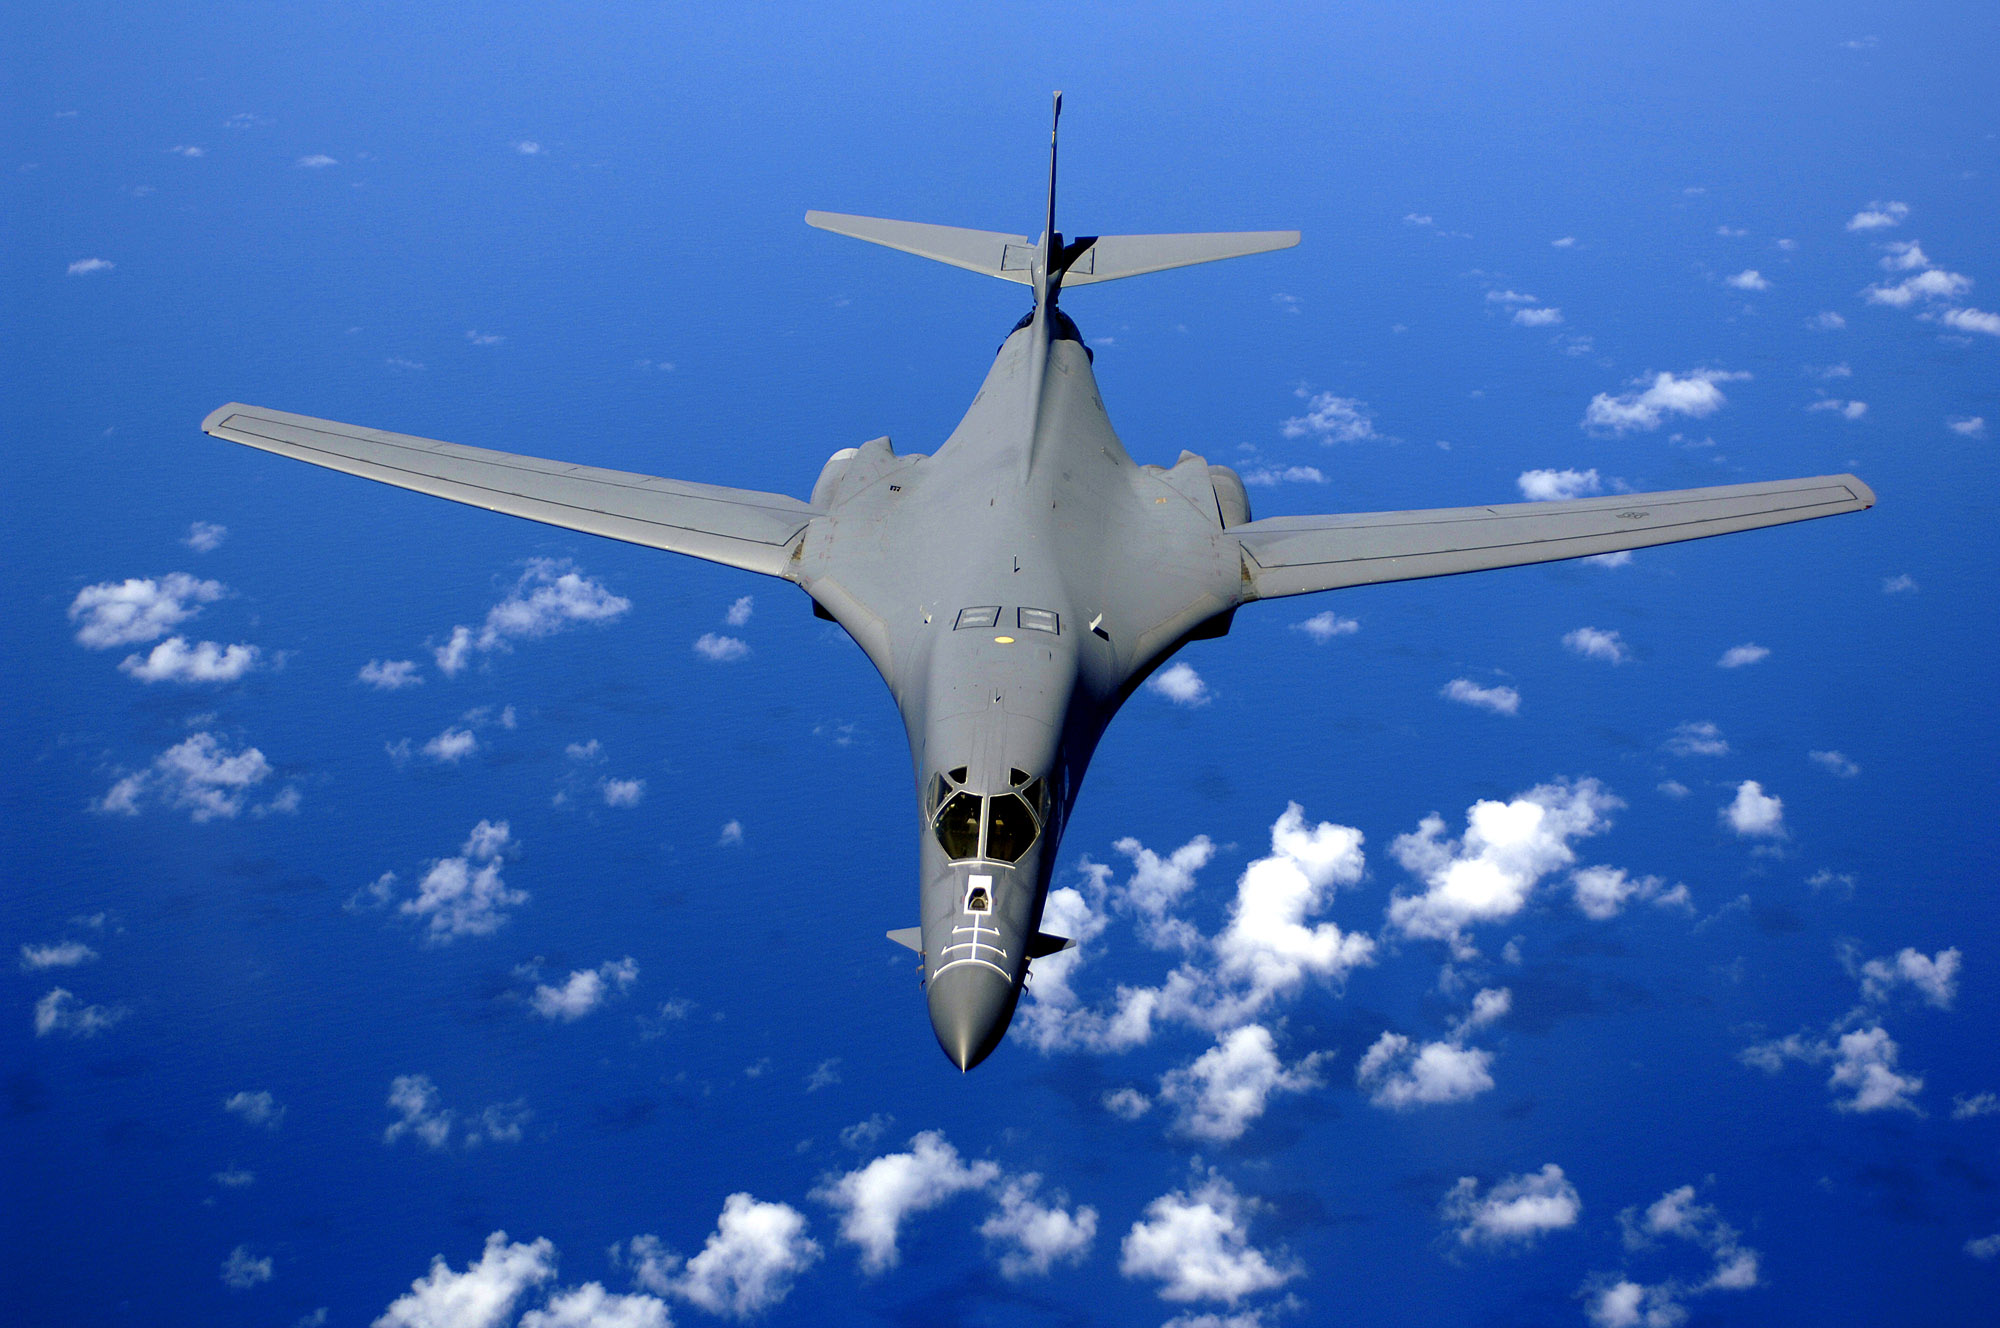 Rockwell B-1 Lancer: Το μαχητικό αεροσκάφος των ΗΠΑ που φοβάται ο Κιμ Γιονγκ Ουν (βίντεο)